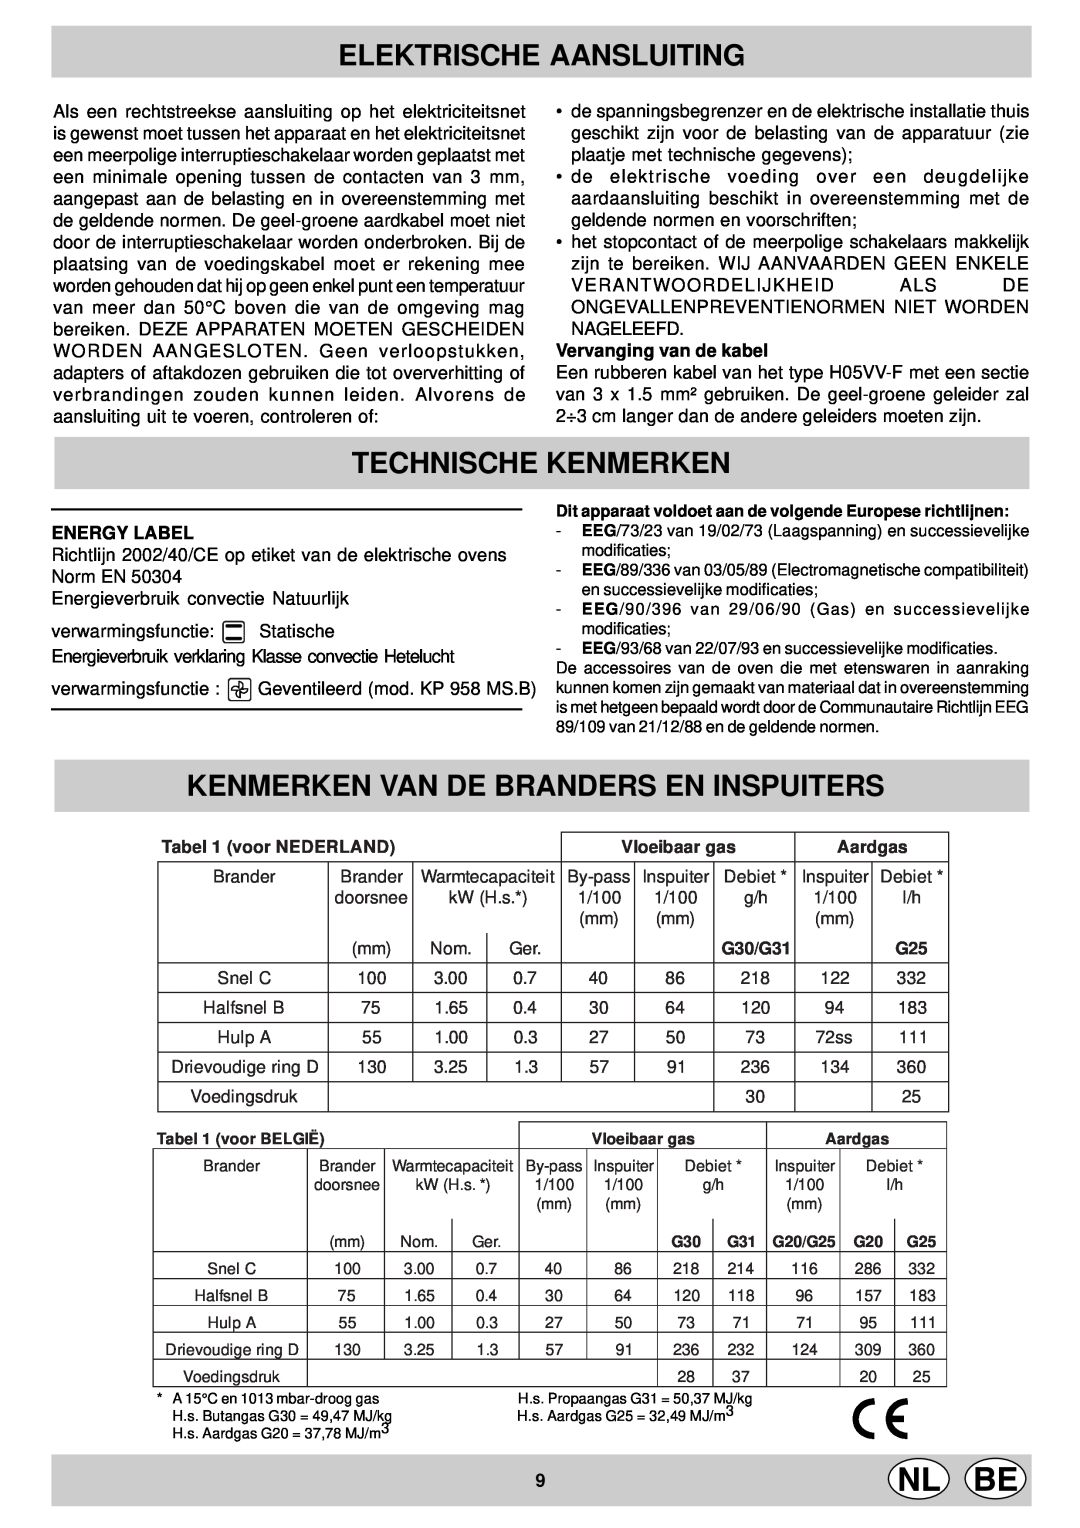 Indesit KP9507EB Technische Kenmerken, Kenmerken Van De Branders En Inspuiters, Elektrische Aansluiting, Energy Label 